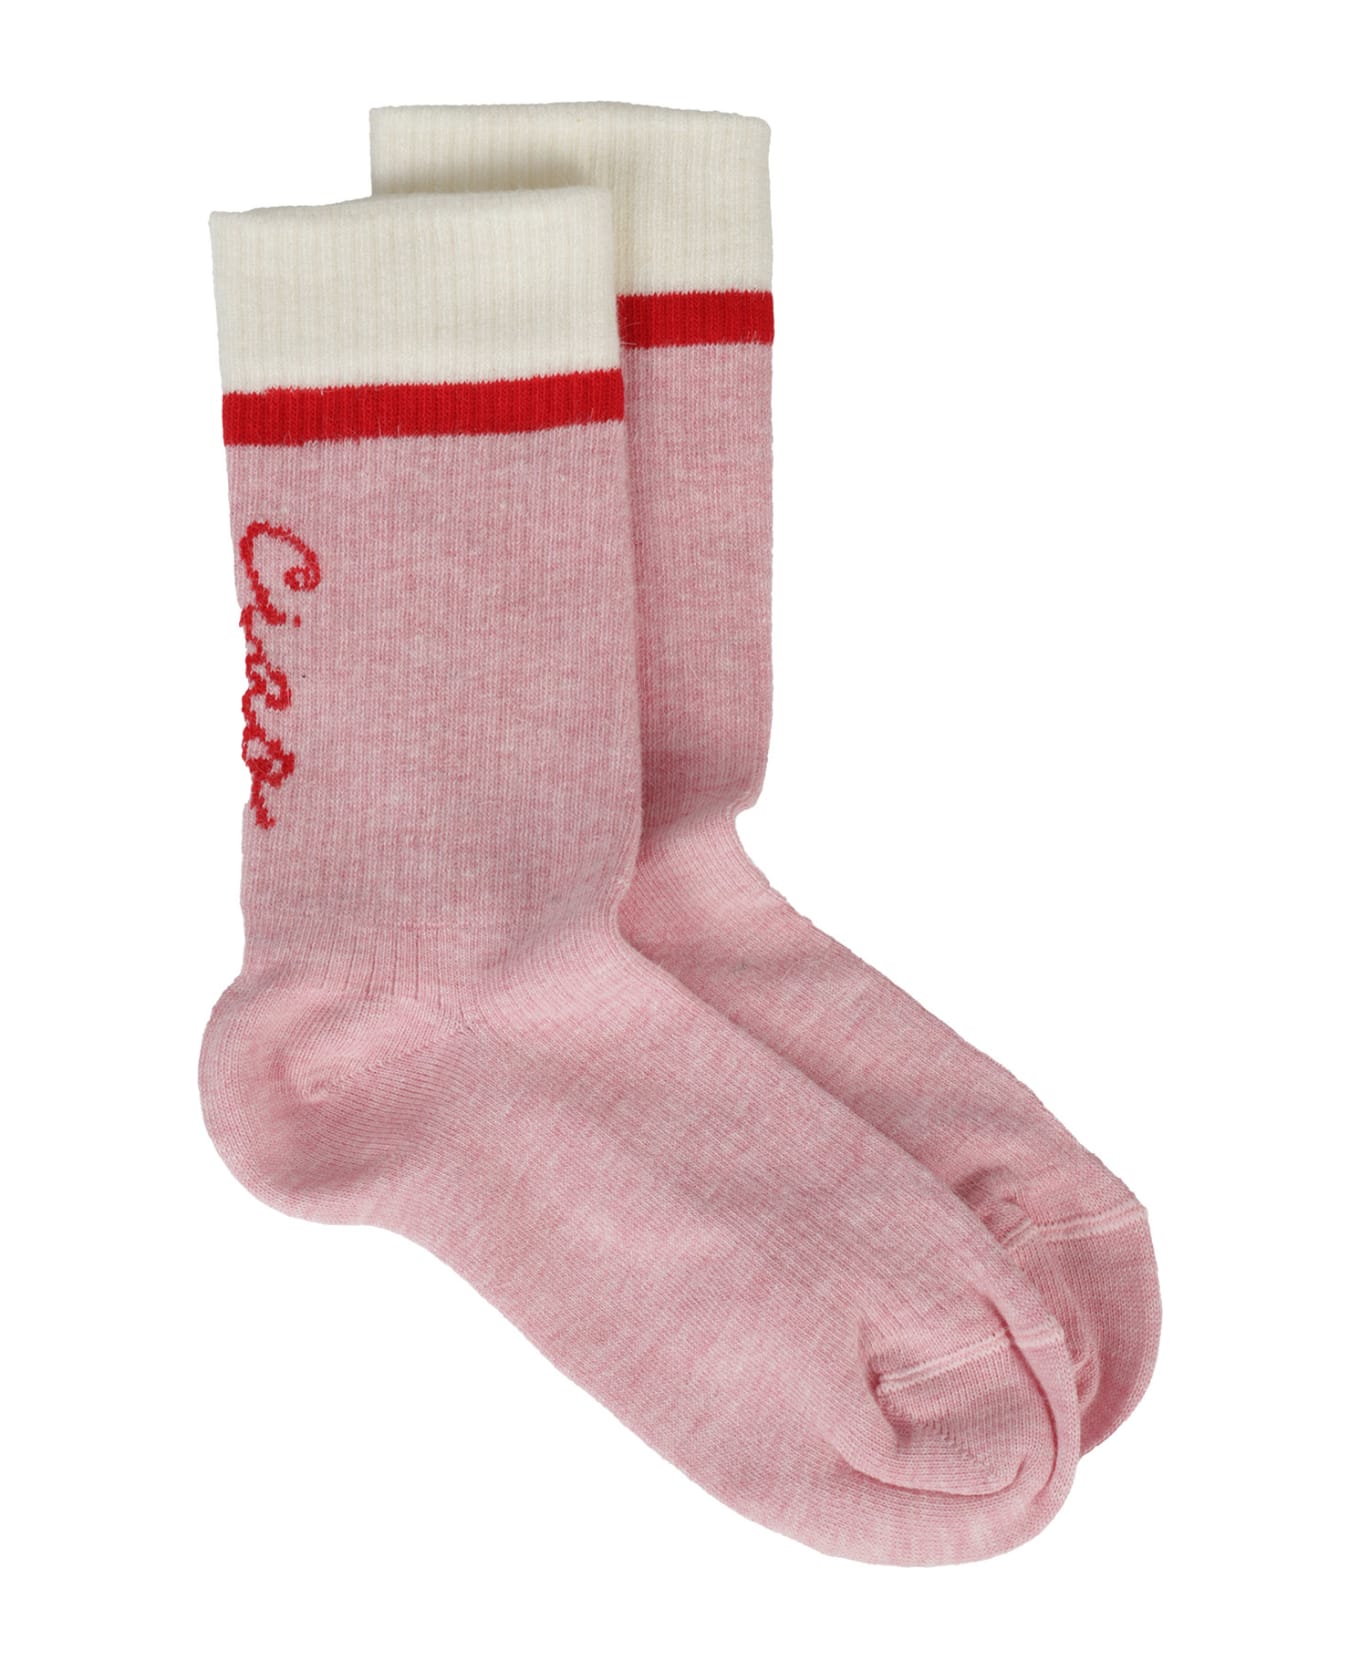 Giada Benincasa Socks - Bianco+rosa